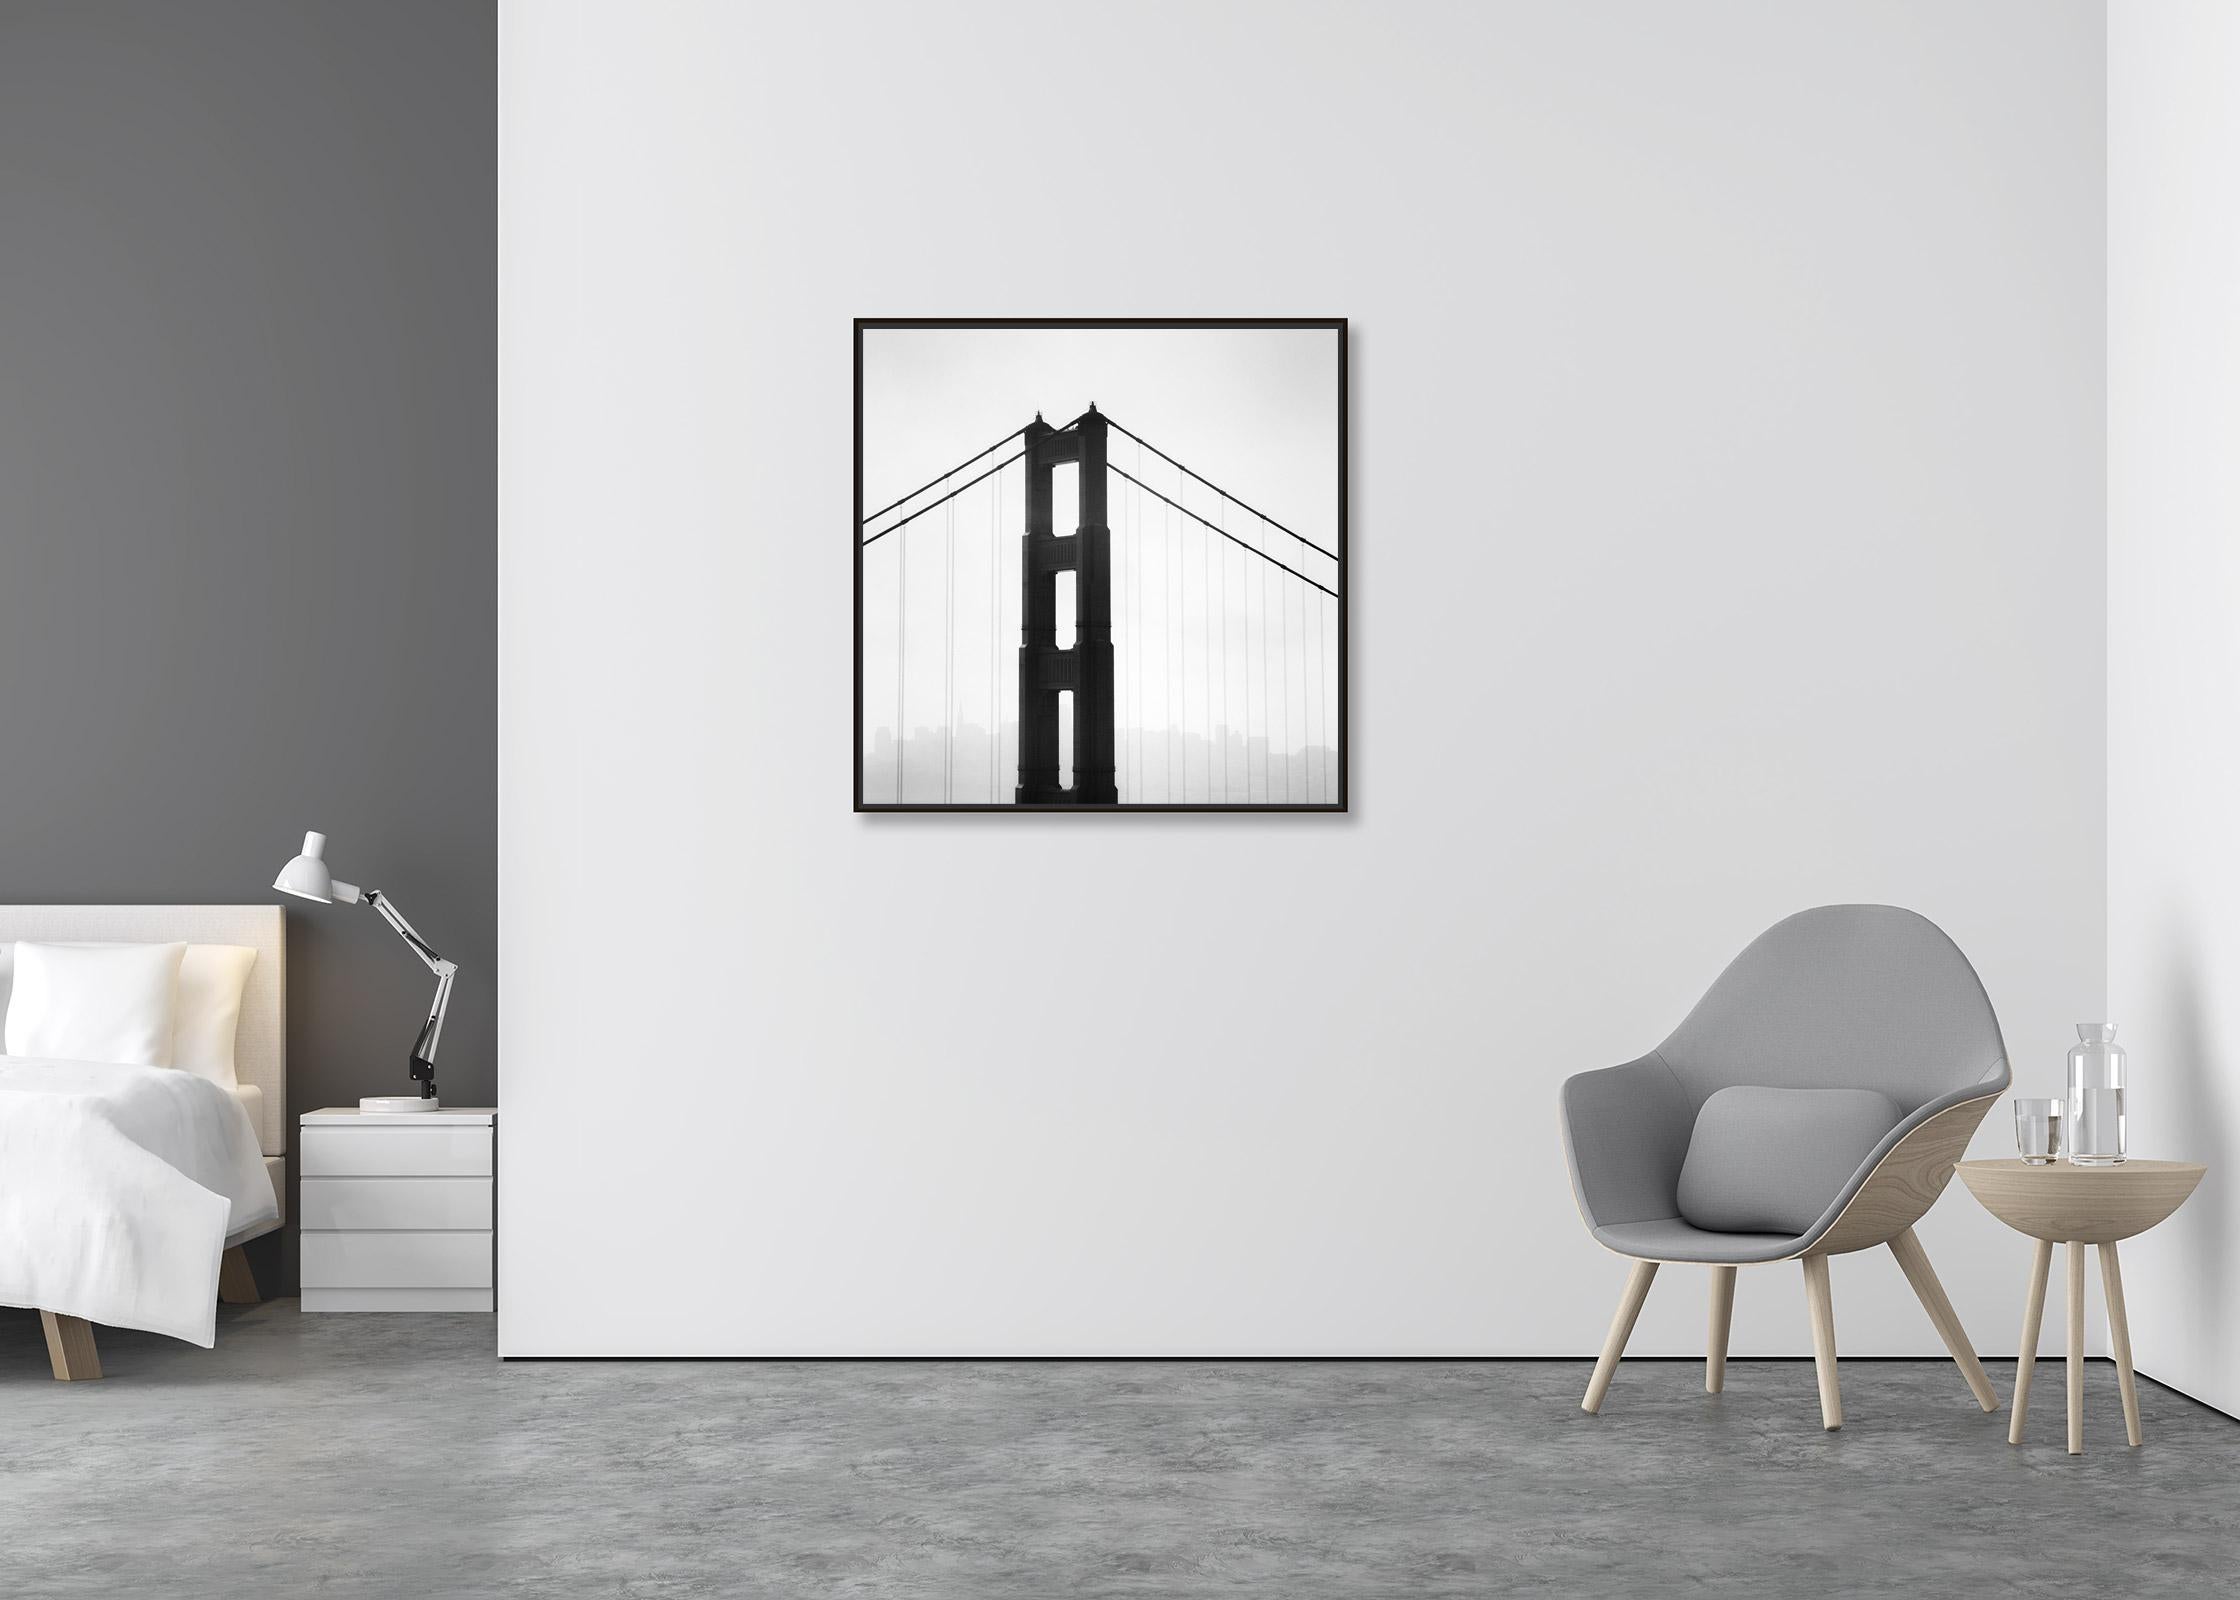 Golden Gate Bridge, San Francisco, USA, minimalistische schwarz-weiße Landschaft (Zeitgenössisch), Photograph, von Gerald Berghammer